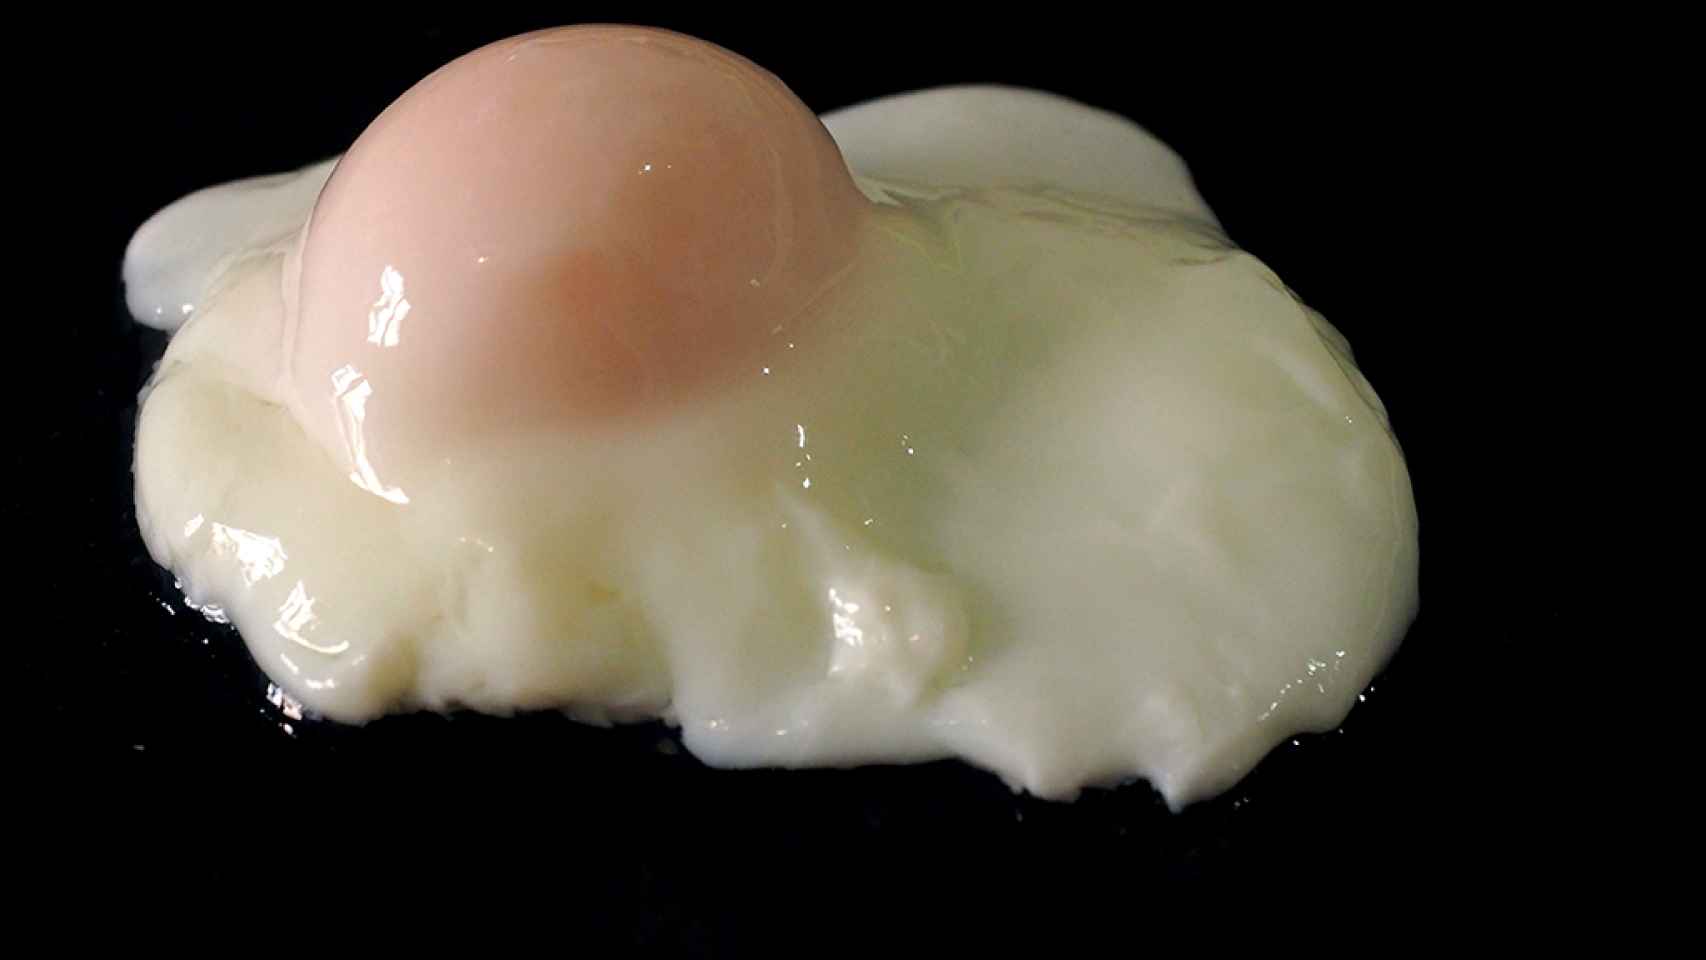 Todos los tips para cocinar huevos: poché, duros, pasados por agua